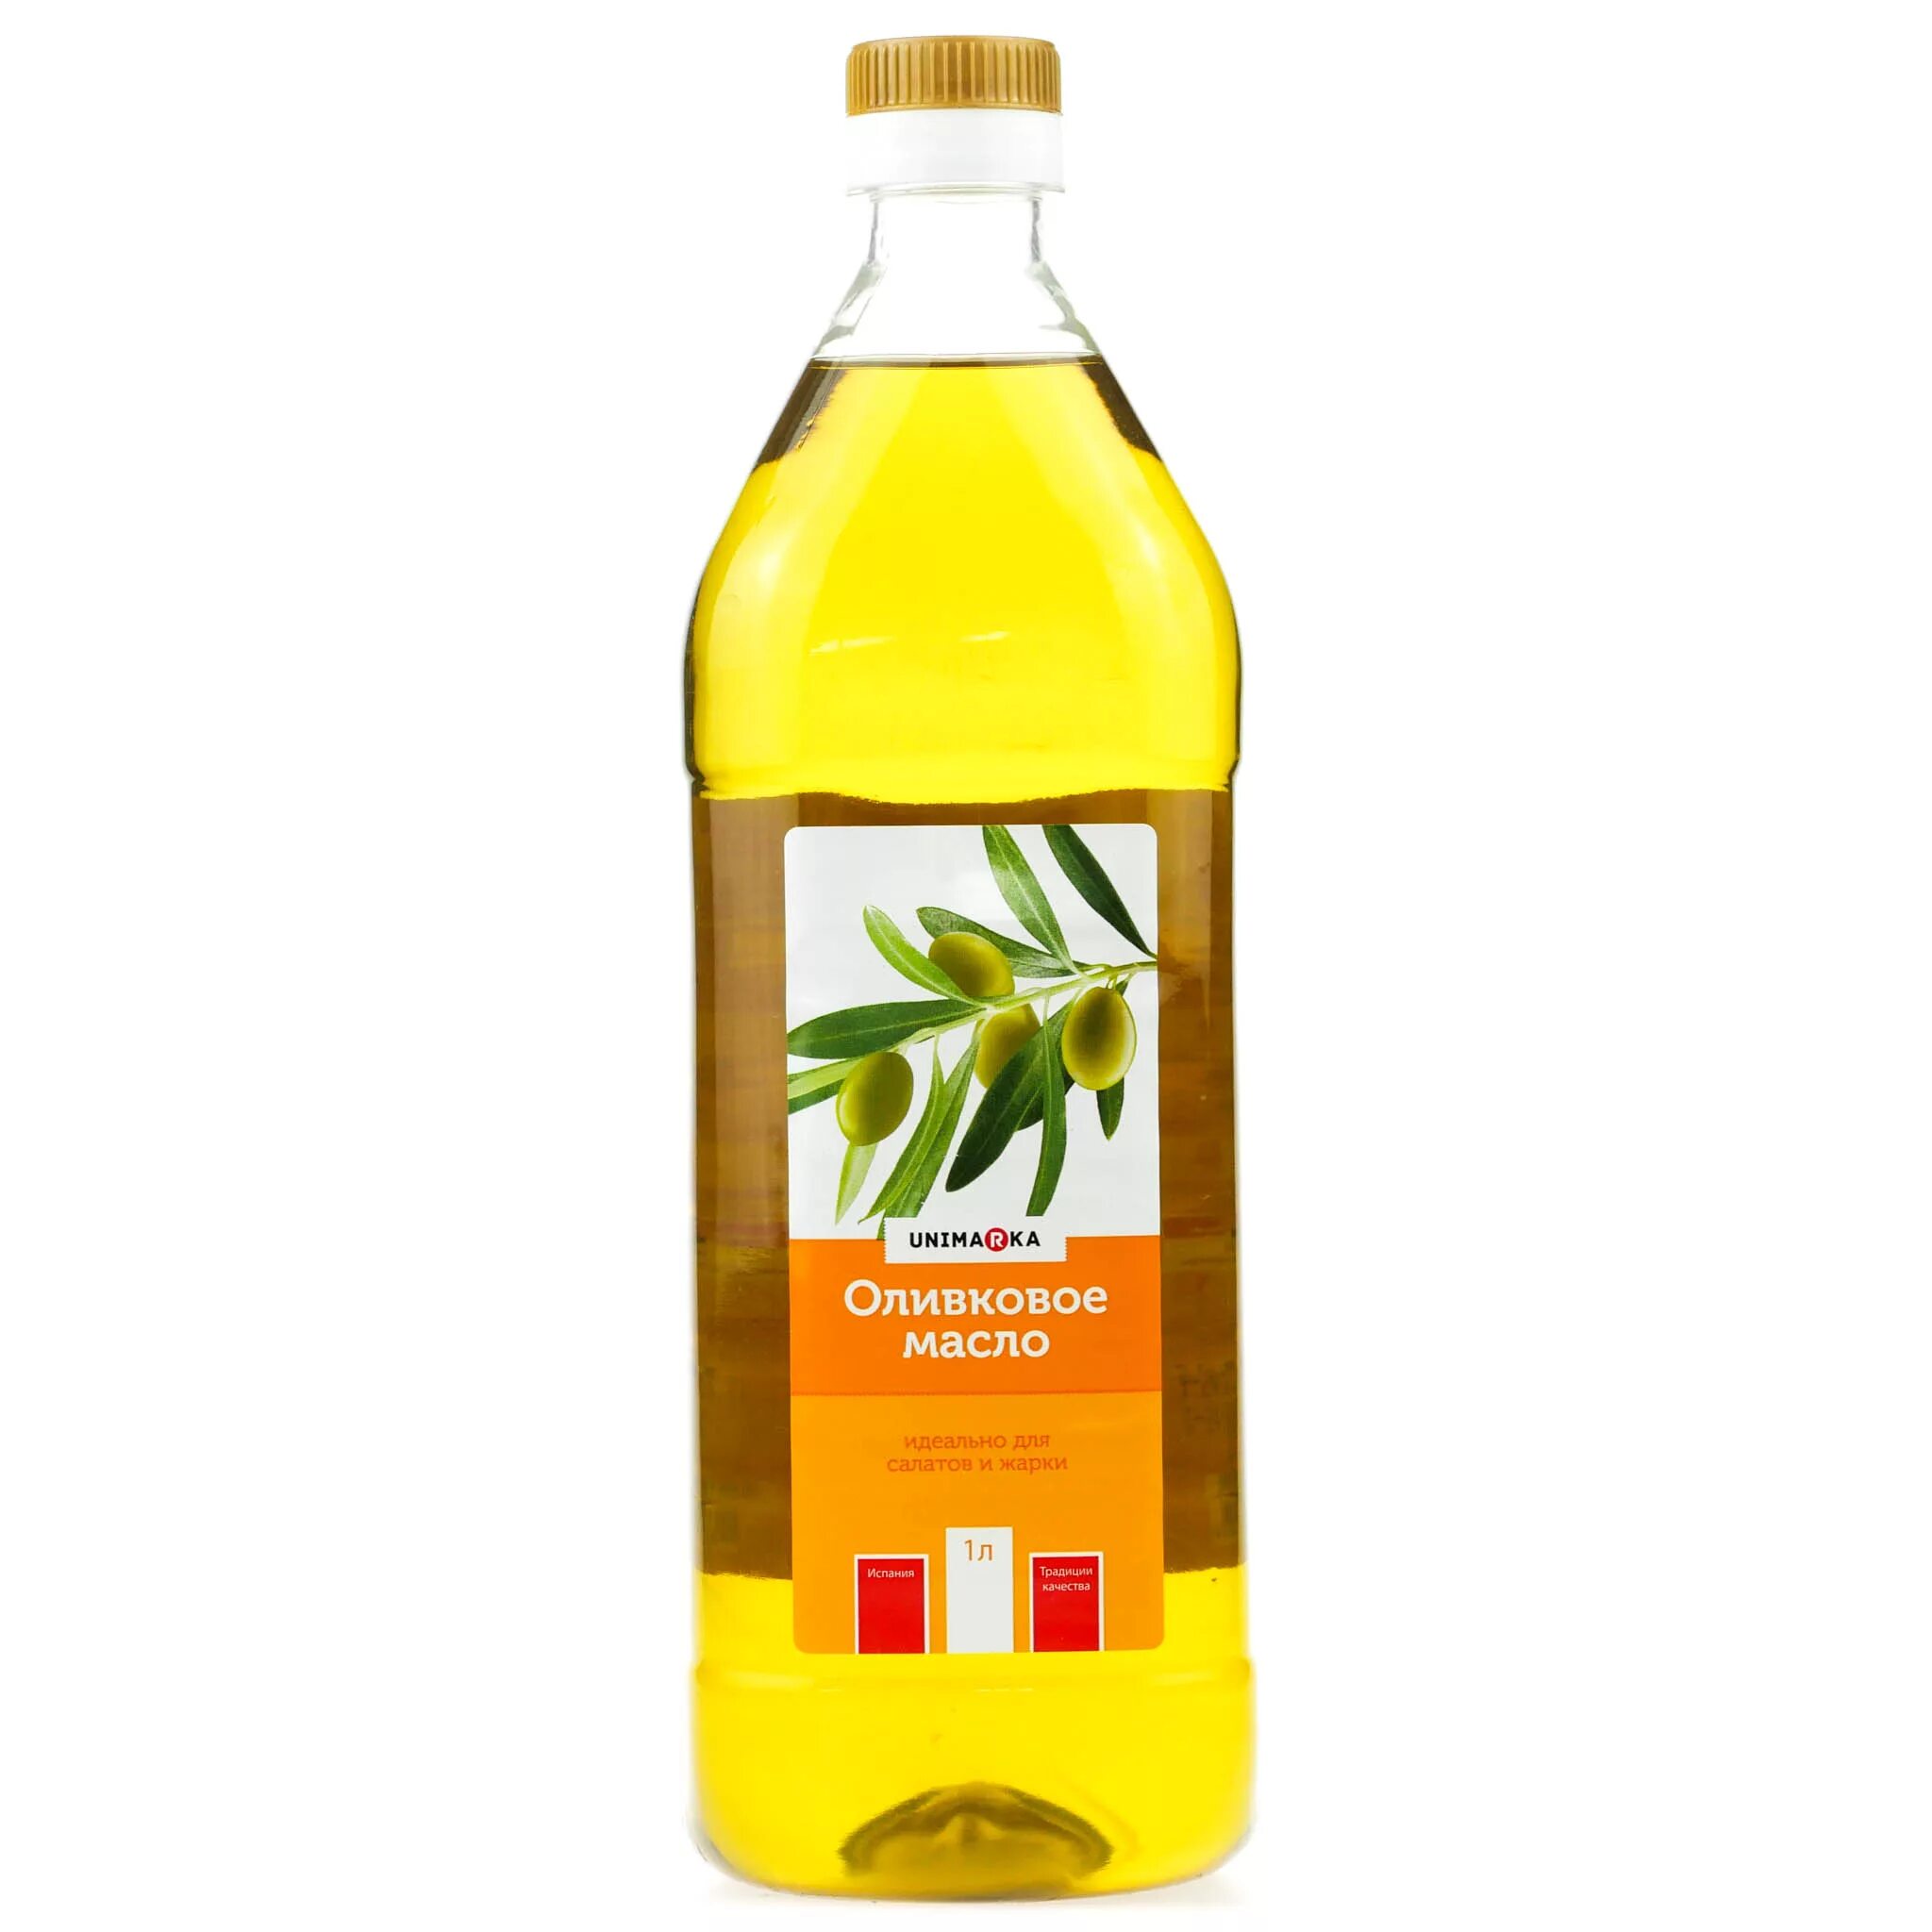 Оливковое масло botanika 1 л рафинированное. Оливковое масло рафинированное и нерафинированное. Масло рапсовое нерафинированное. Рафинированное масло оливковое для салата. Какое масло для салата рафинированное или нерафинированное